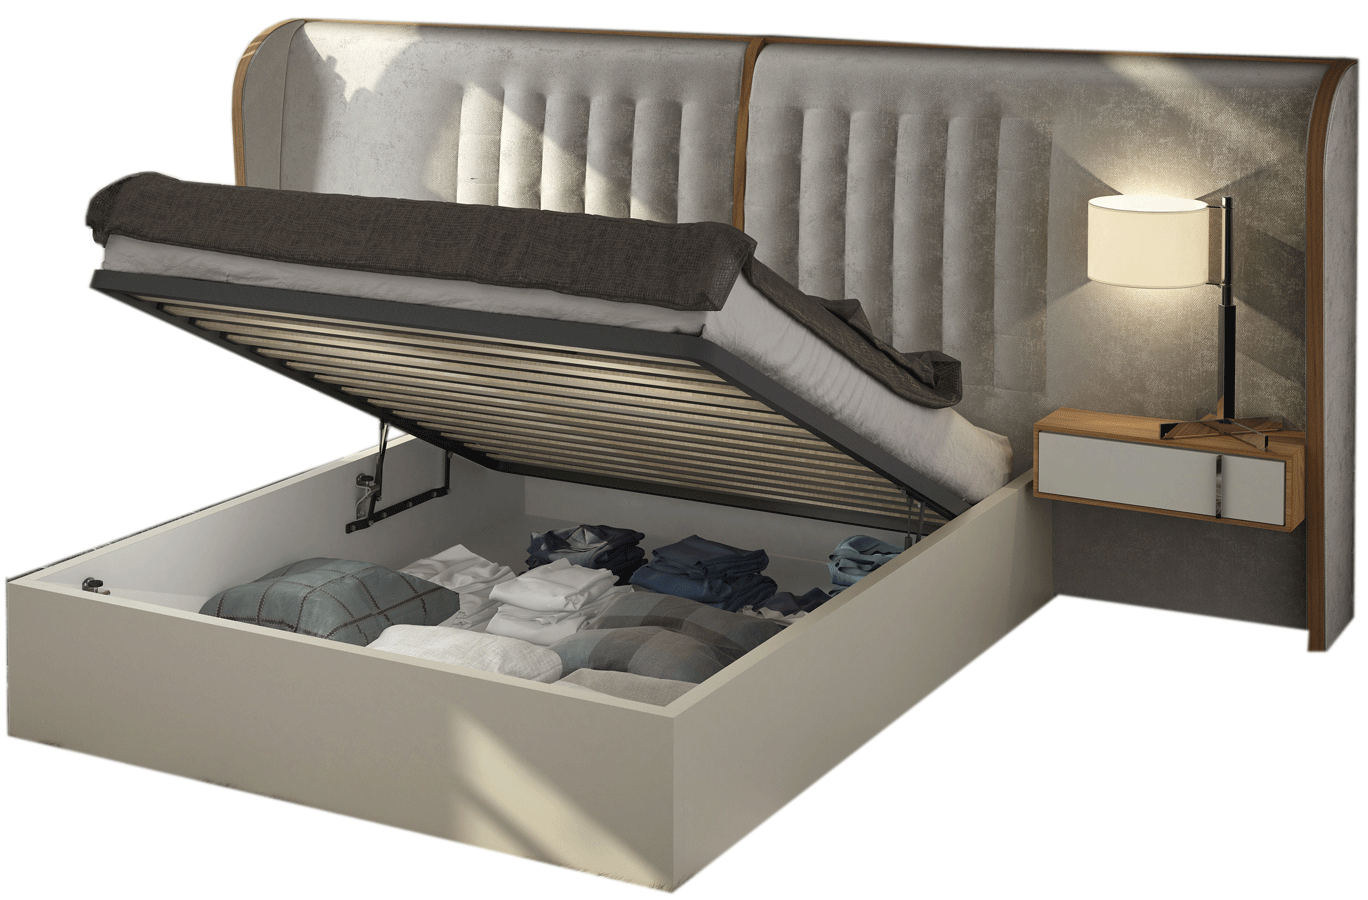 Bedroom Furniture Beds with storage Cadiz Bed